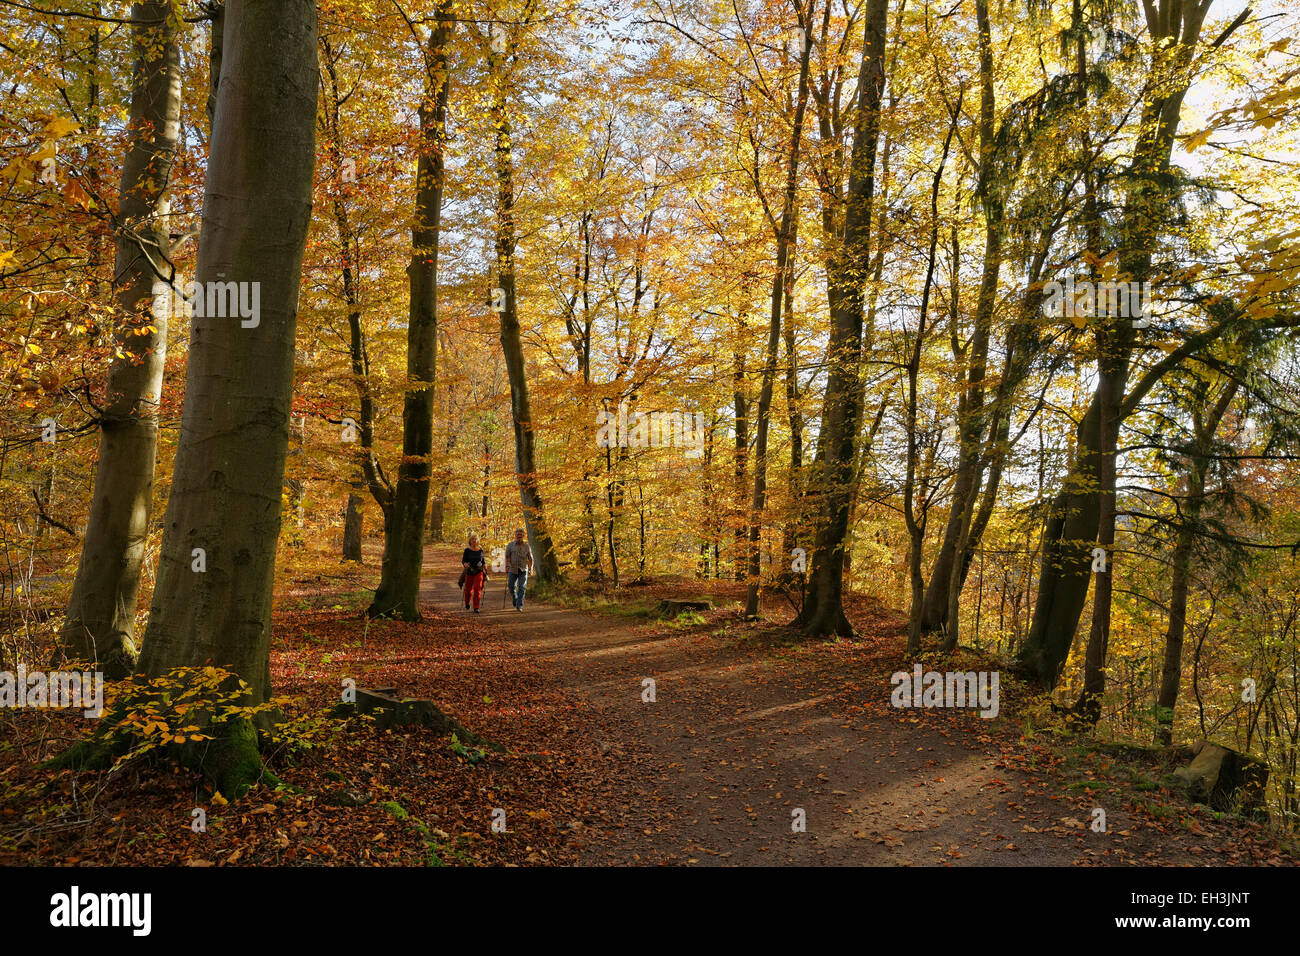 Pista forestale, autunno del bosco di faggio sulle rive dell'Isar, Grünwald, nei pressi di Monaco di Baviera, Baviera, Baviera, Germania Foto Stock